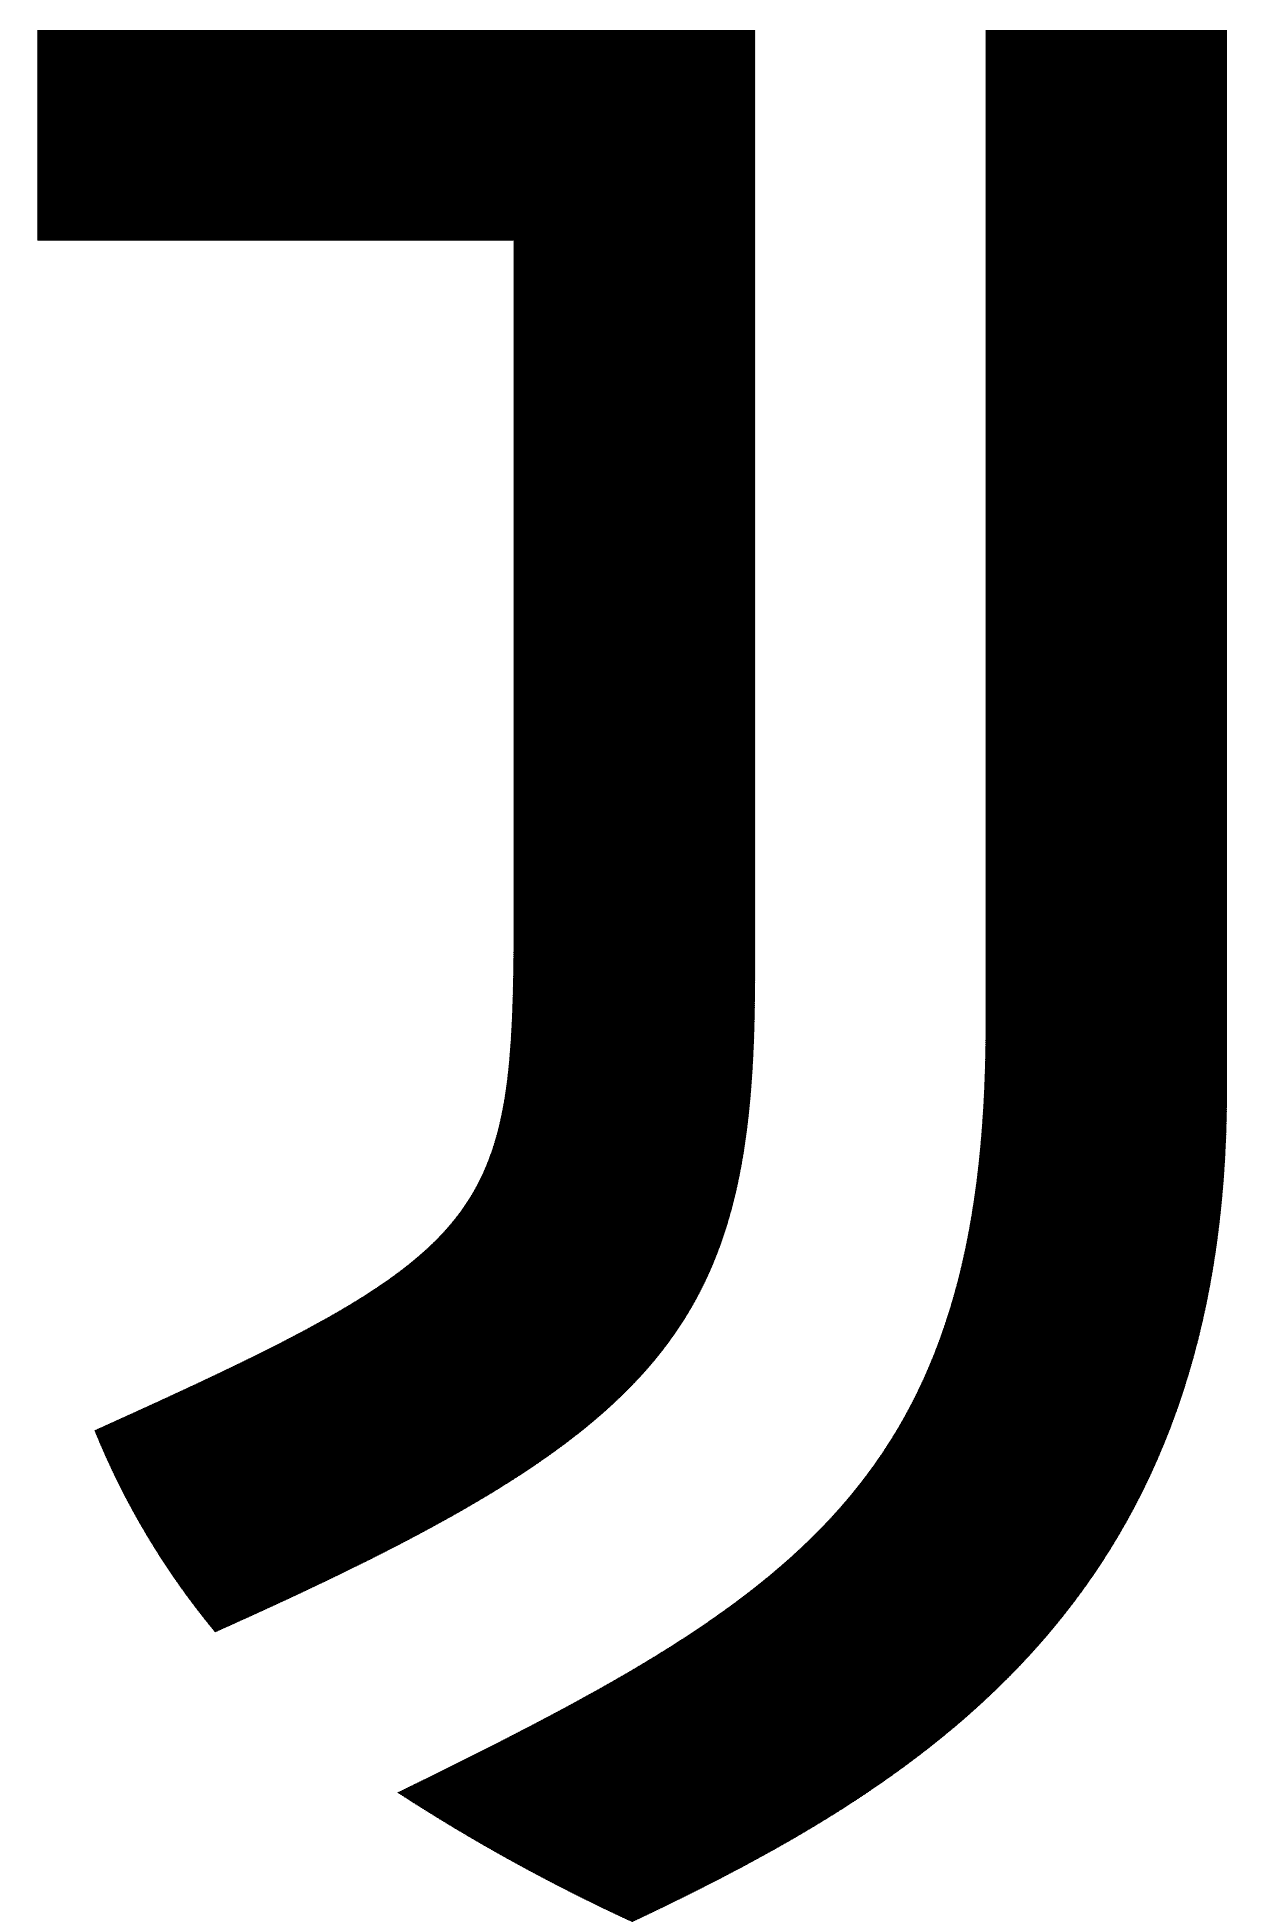 Juventus-logo